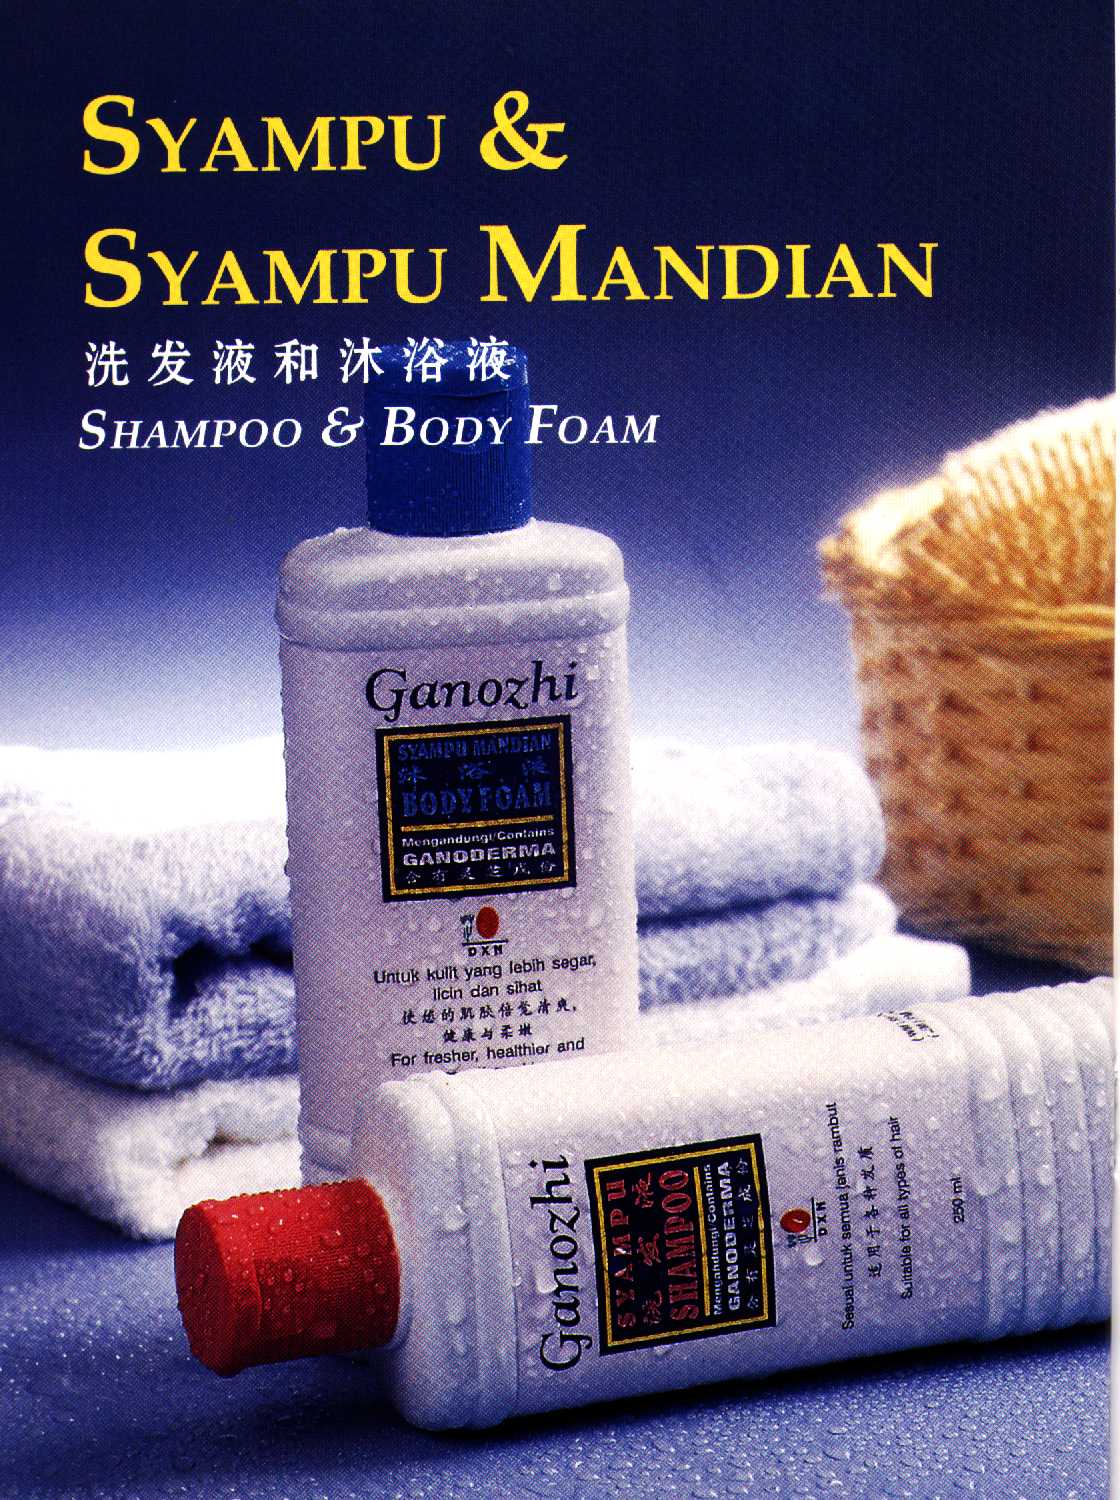 Syampu & Syampu Mandian